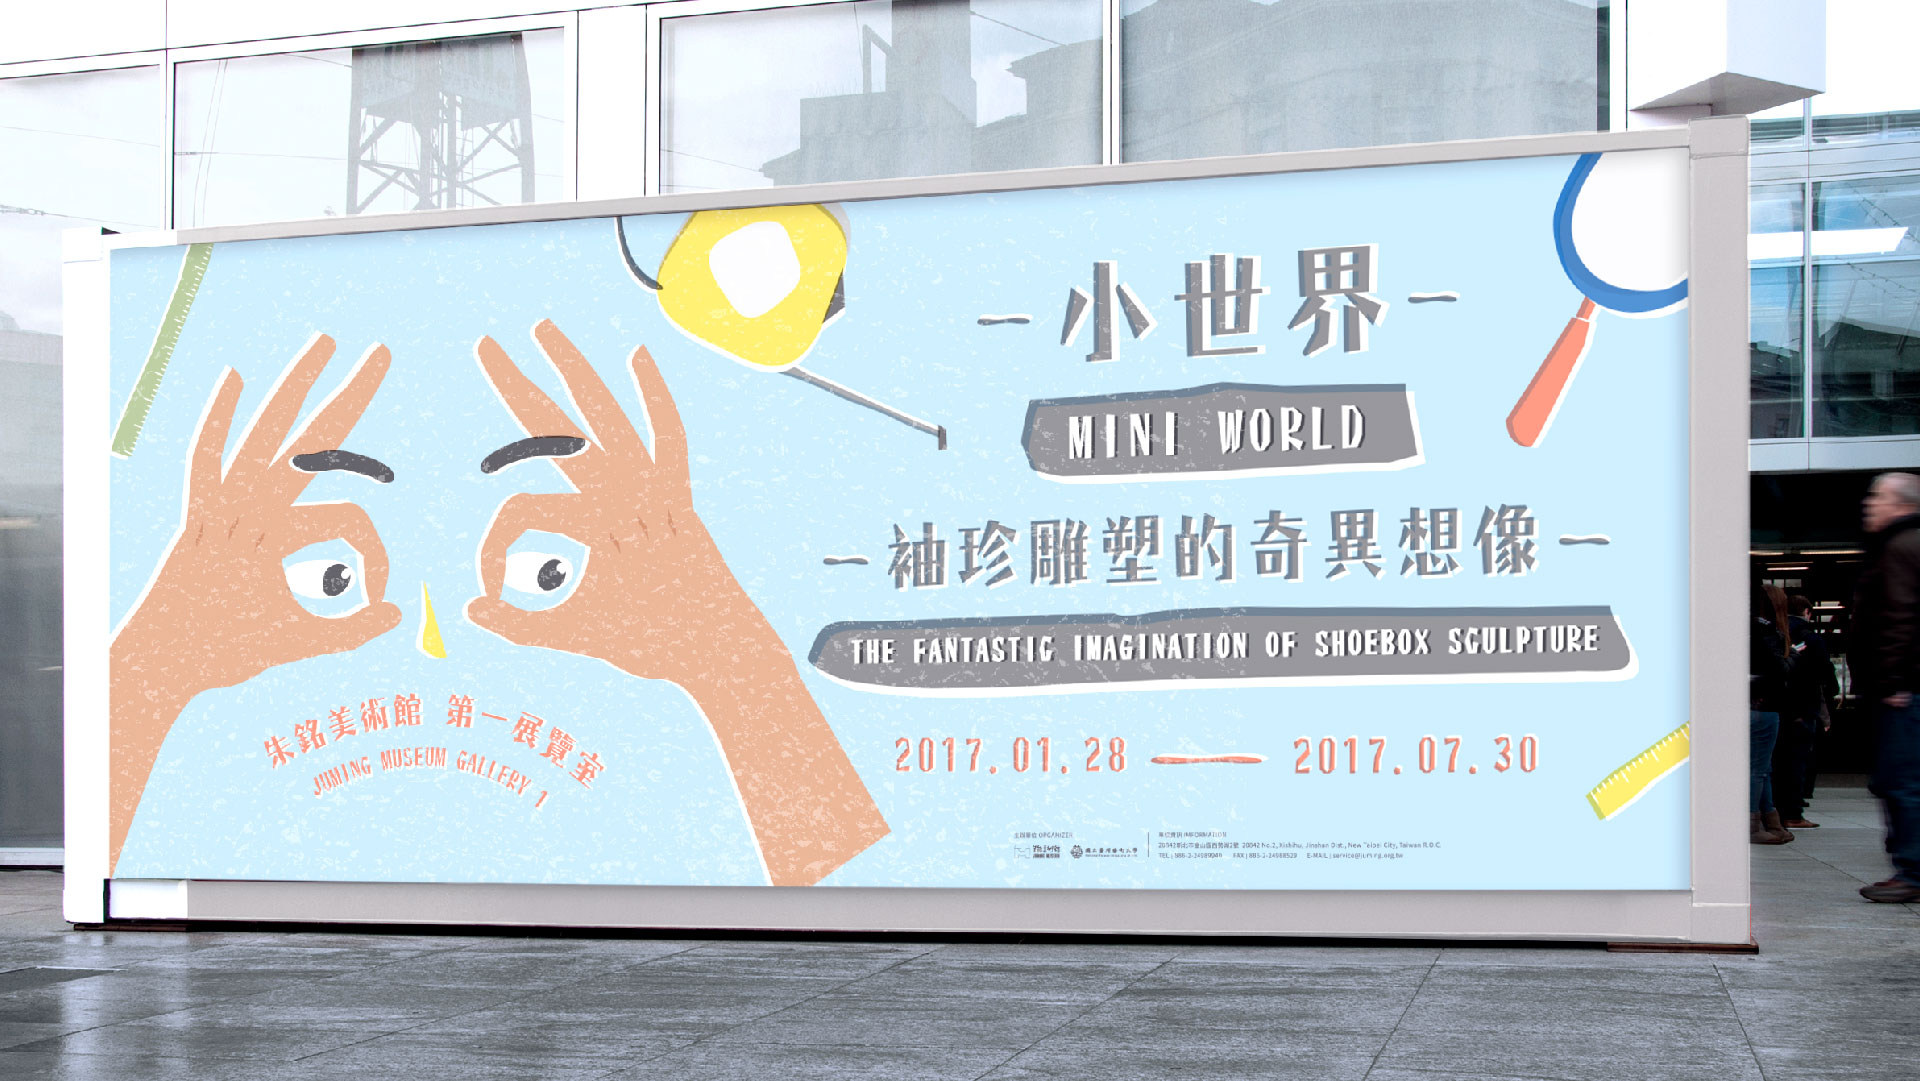 同心圓製作－展覽－朱銘台灣藝術大學－小世界袖珍雕塑的奇異想像